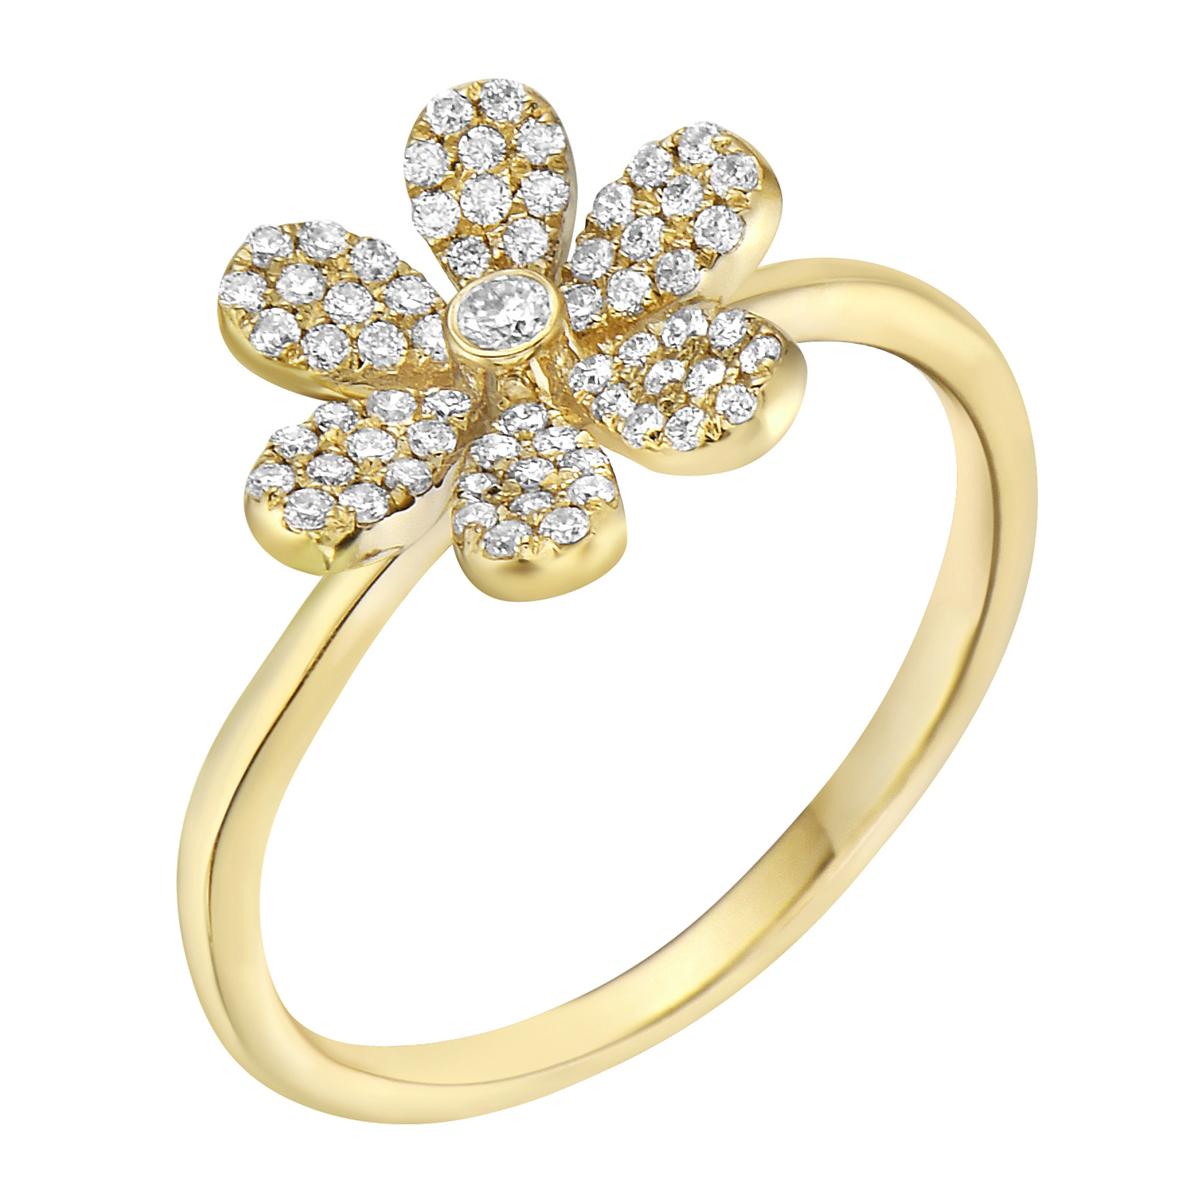 Avec cette exquise bague fleur en or jaune et diamant, le style et le glamour sont à l'honneur. Cette bague en or jaune 14 carats est composée de 1,9 gramme d'or et est recouverte de 67 diamants ronds de couleur GH, SI1-SI2, totalisant 0,26ct. Cette